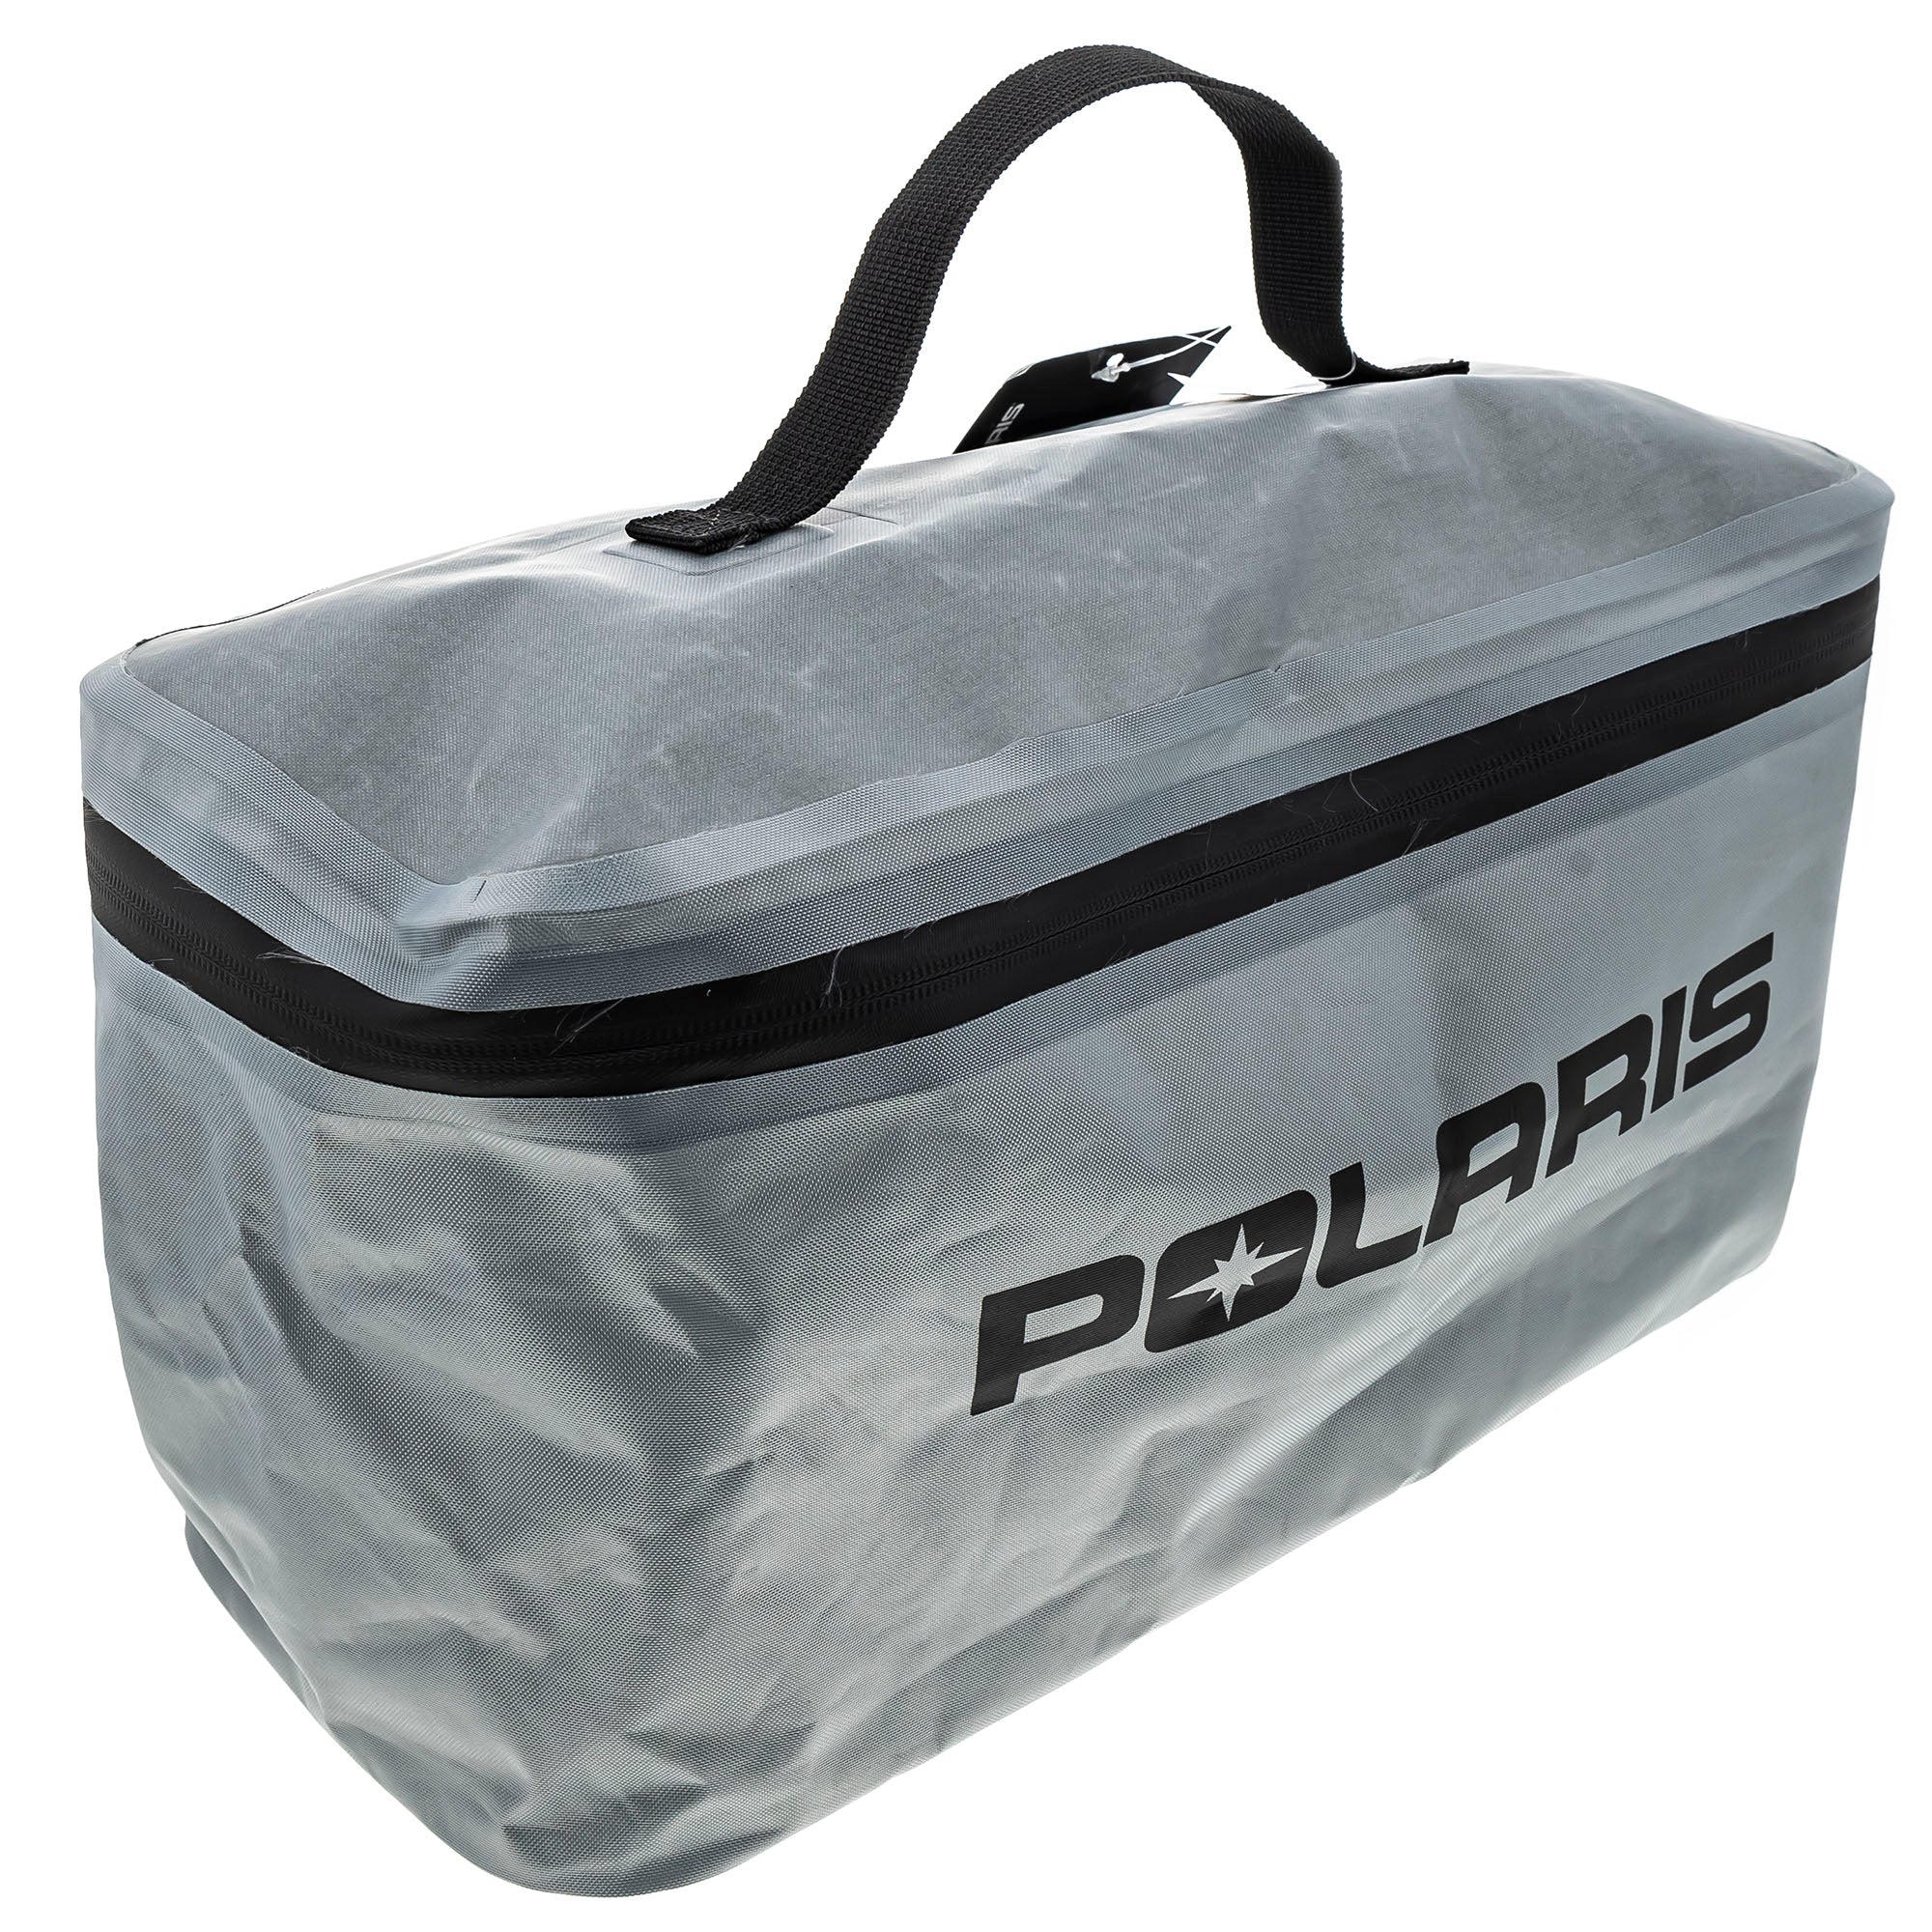 Polaris 2889114 Bag